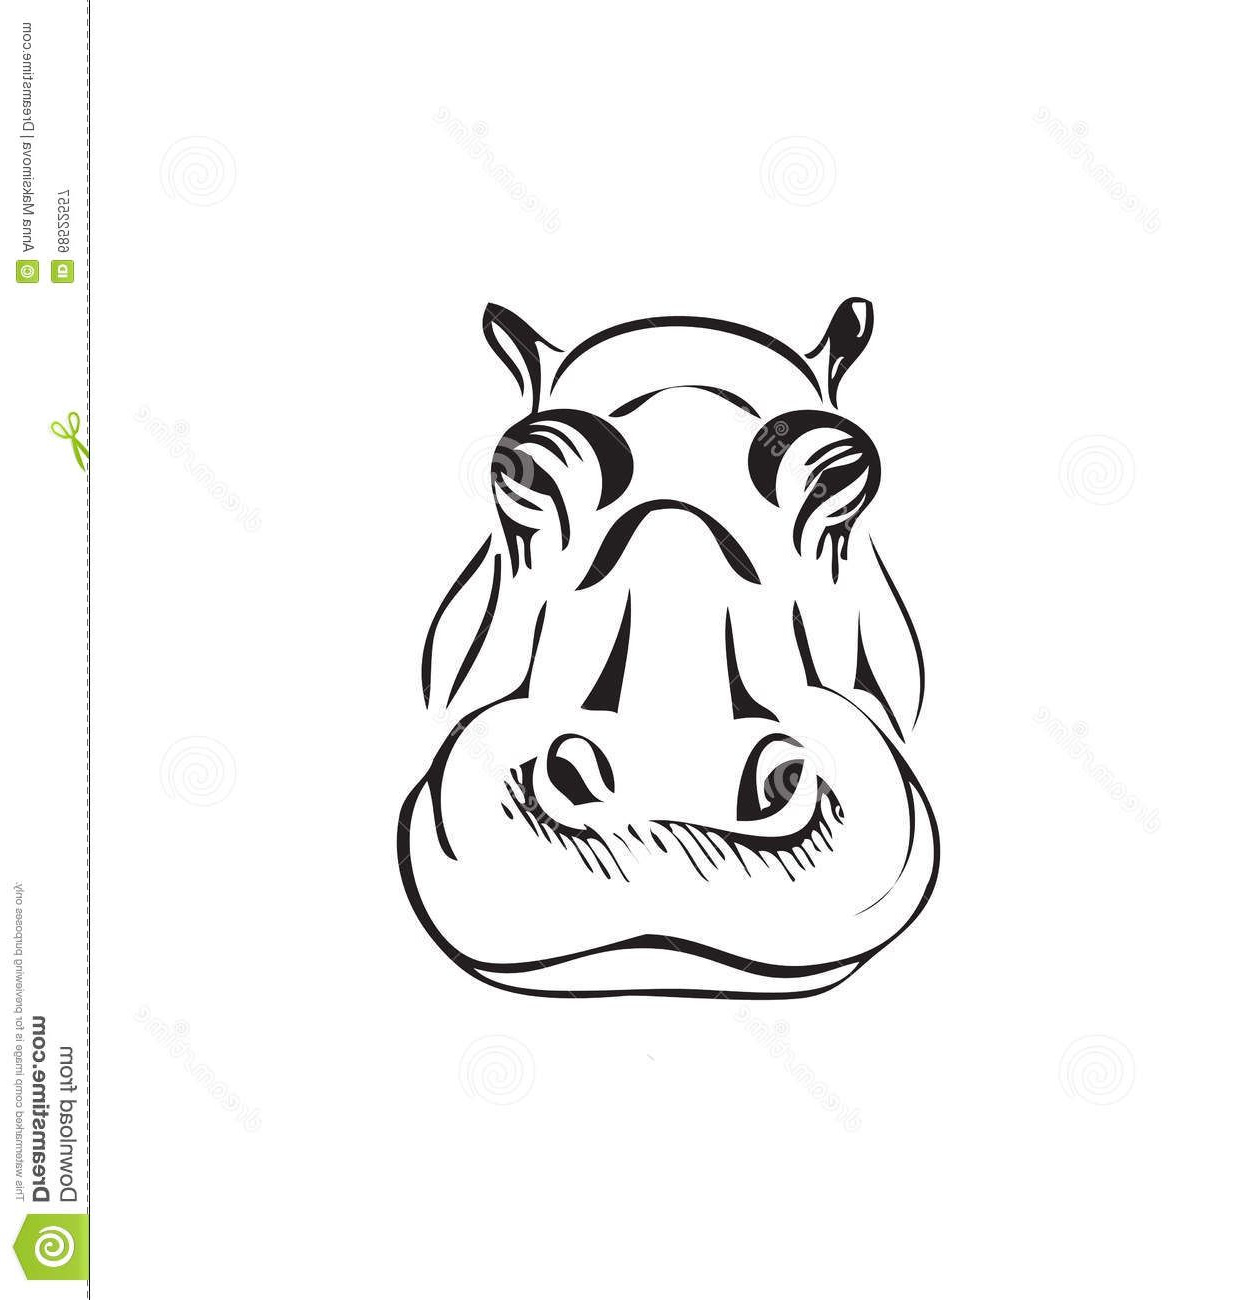 Elephant Dessin De Face Impressionnant Stock Tête D Un Hippopotame Illustration De Vecteur Image